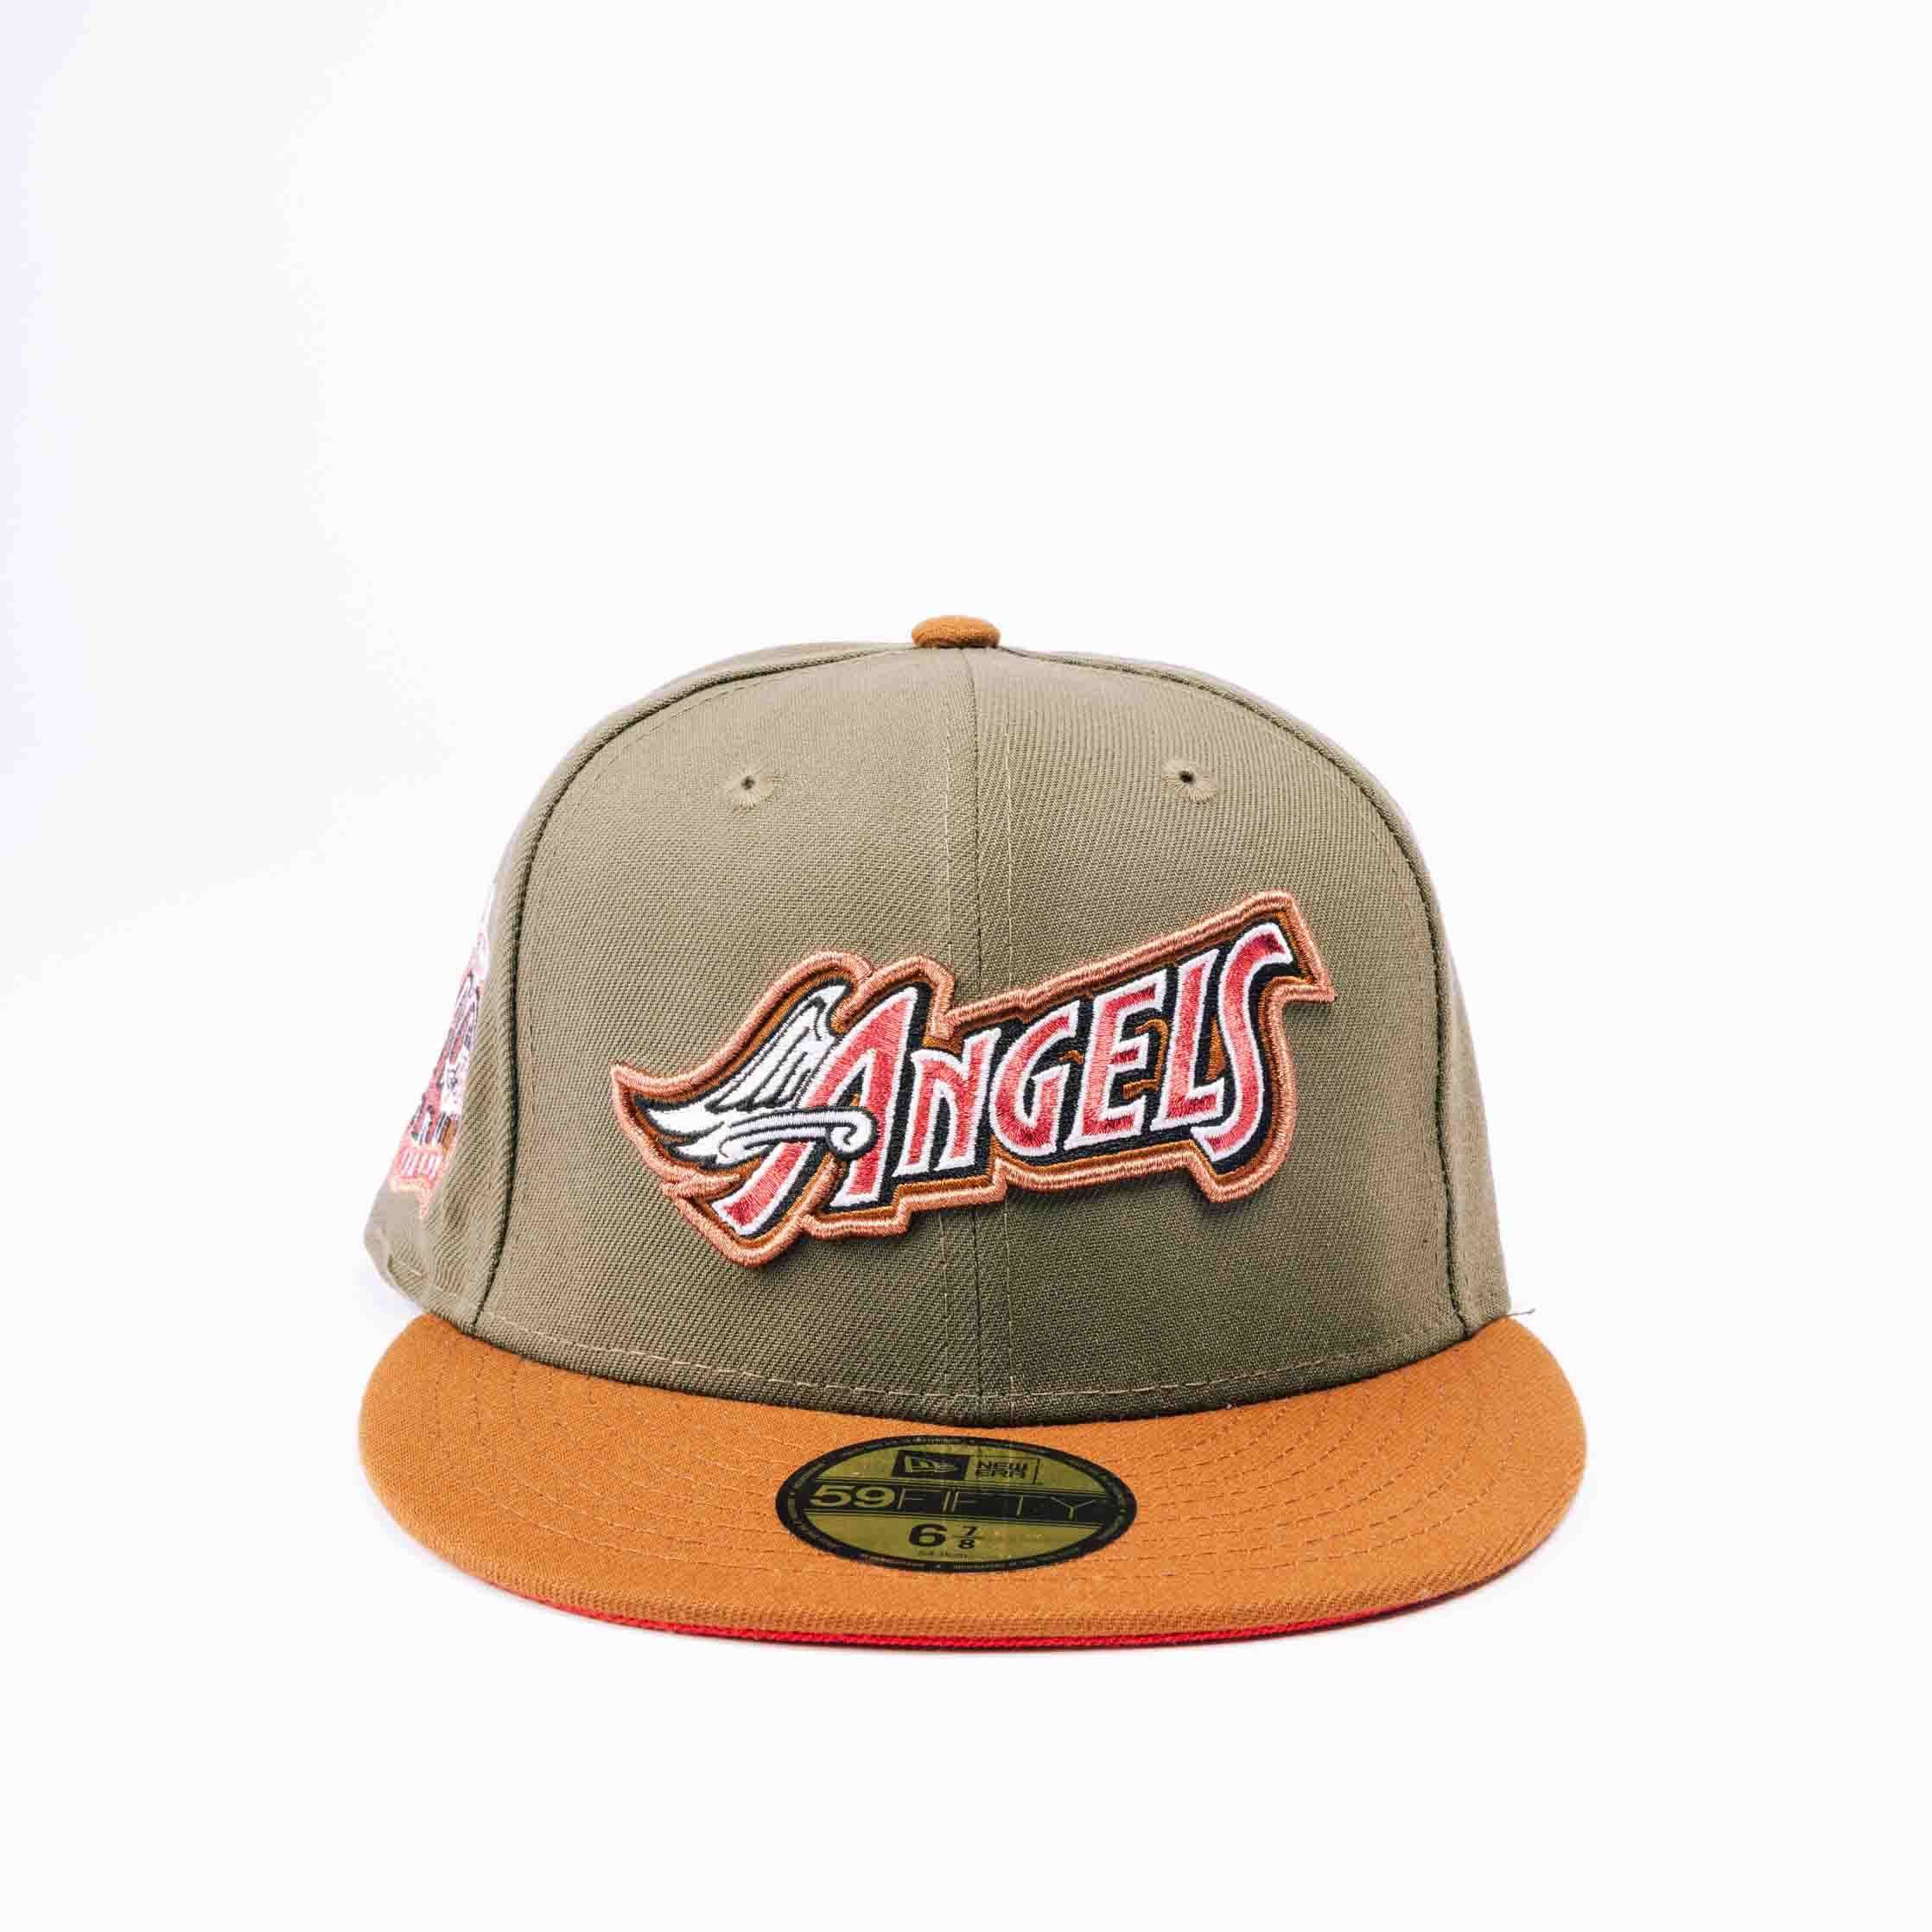 New Era Anaheim Angels Fitted Hat